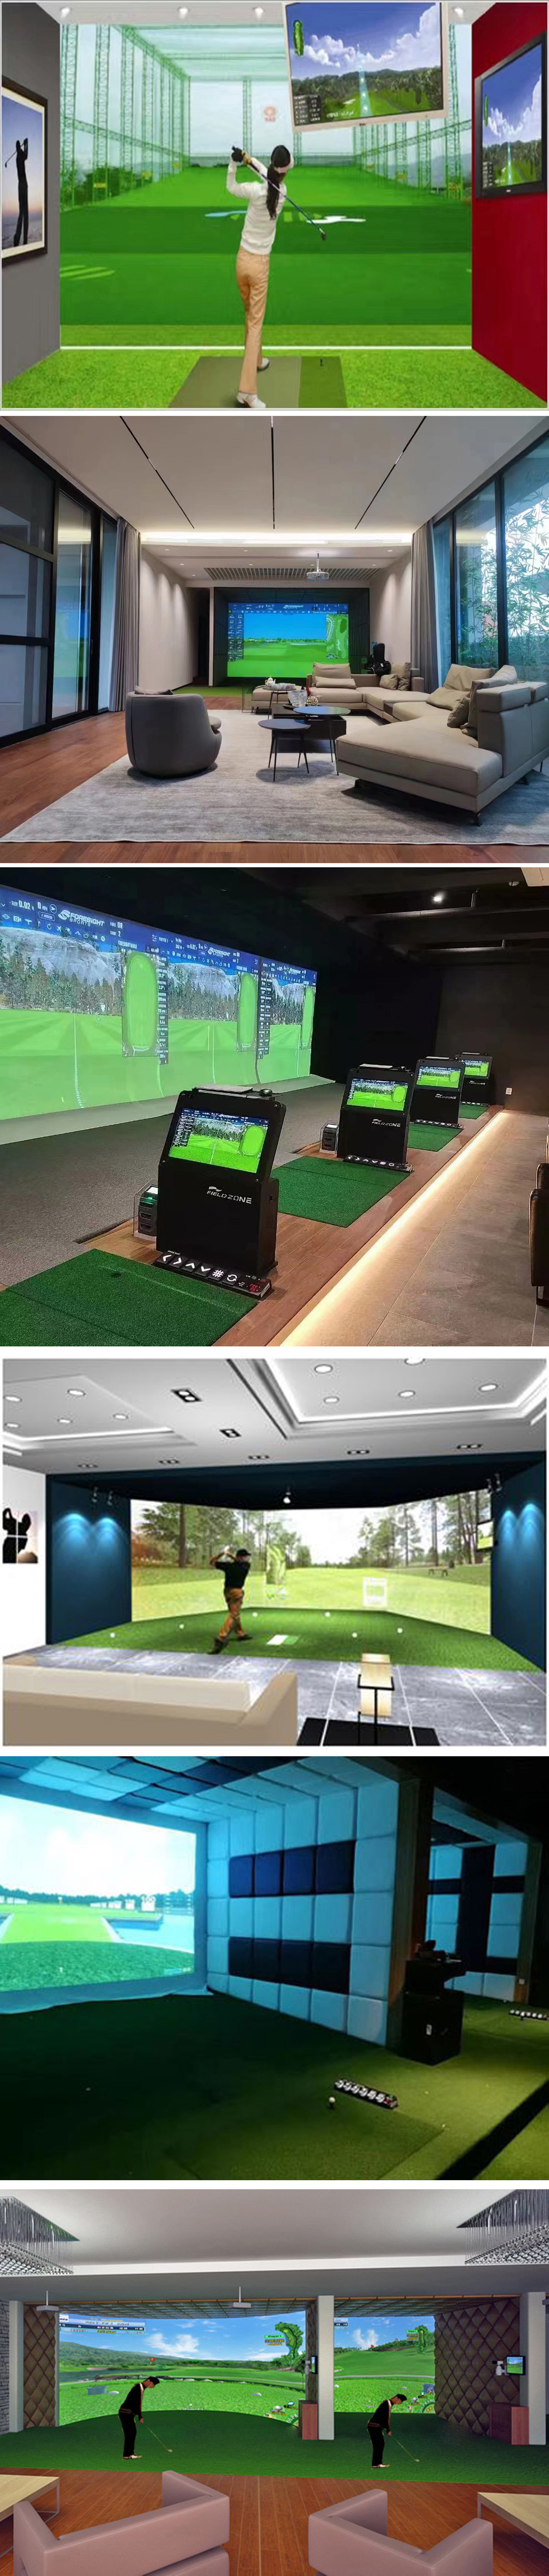 韩国高尔夫模拟系统  3.jpg